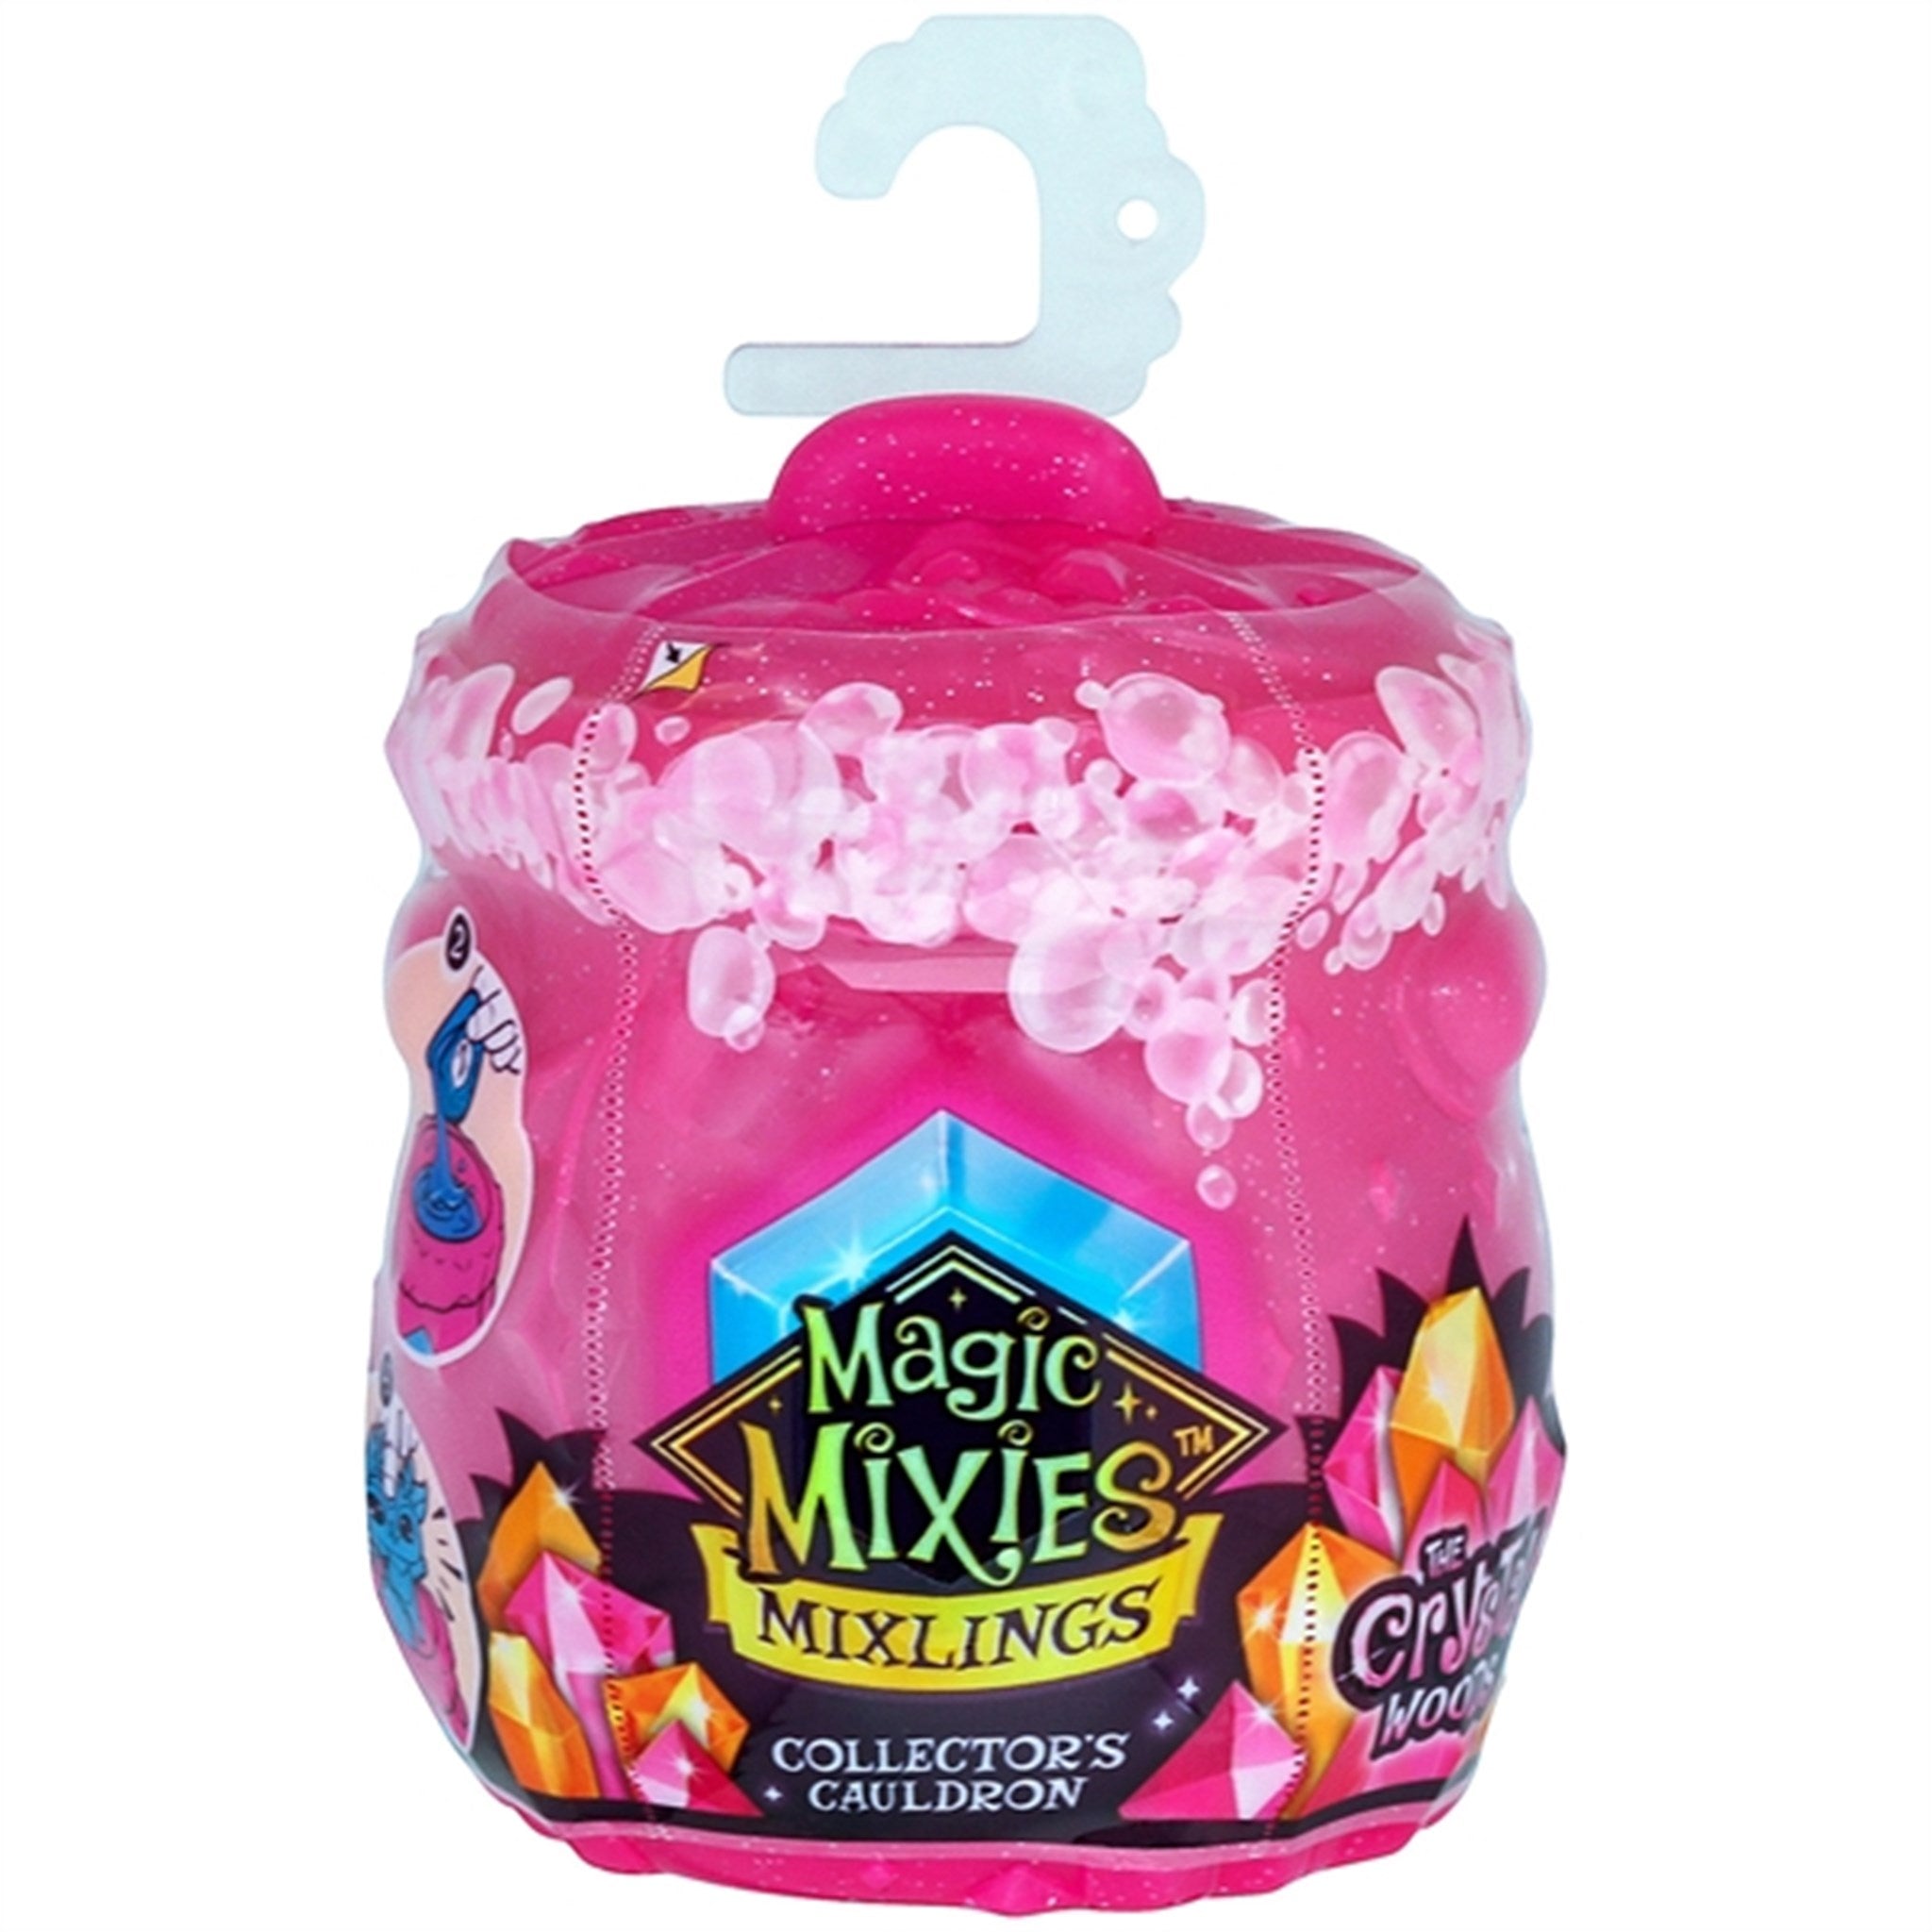 Magic Mixies Mixlings Single Pack